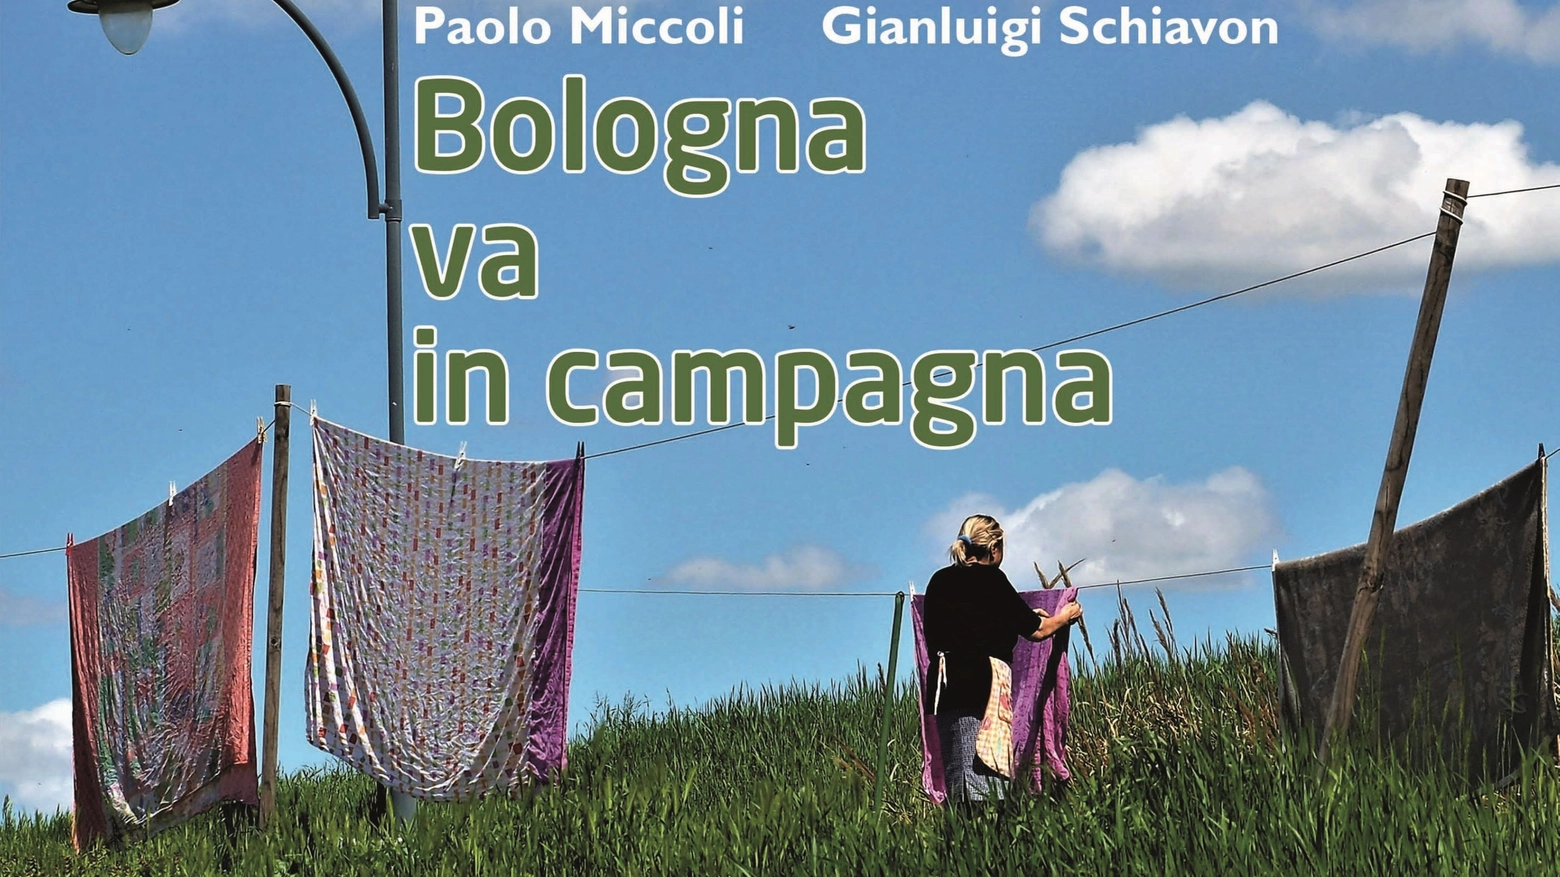 'Bologna va in campagna', Paolo Miccoli e Gianluigi Schiavon